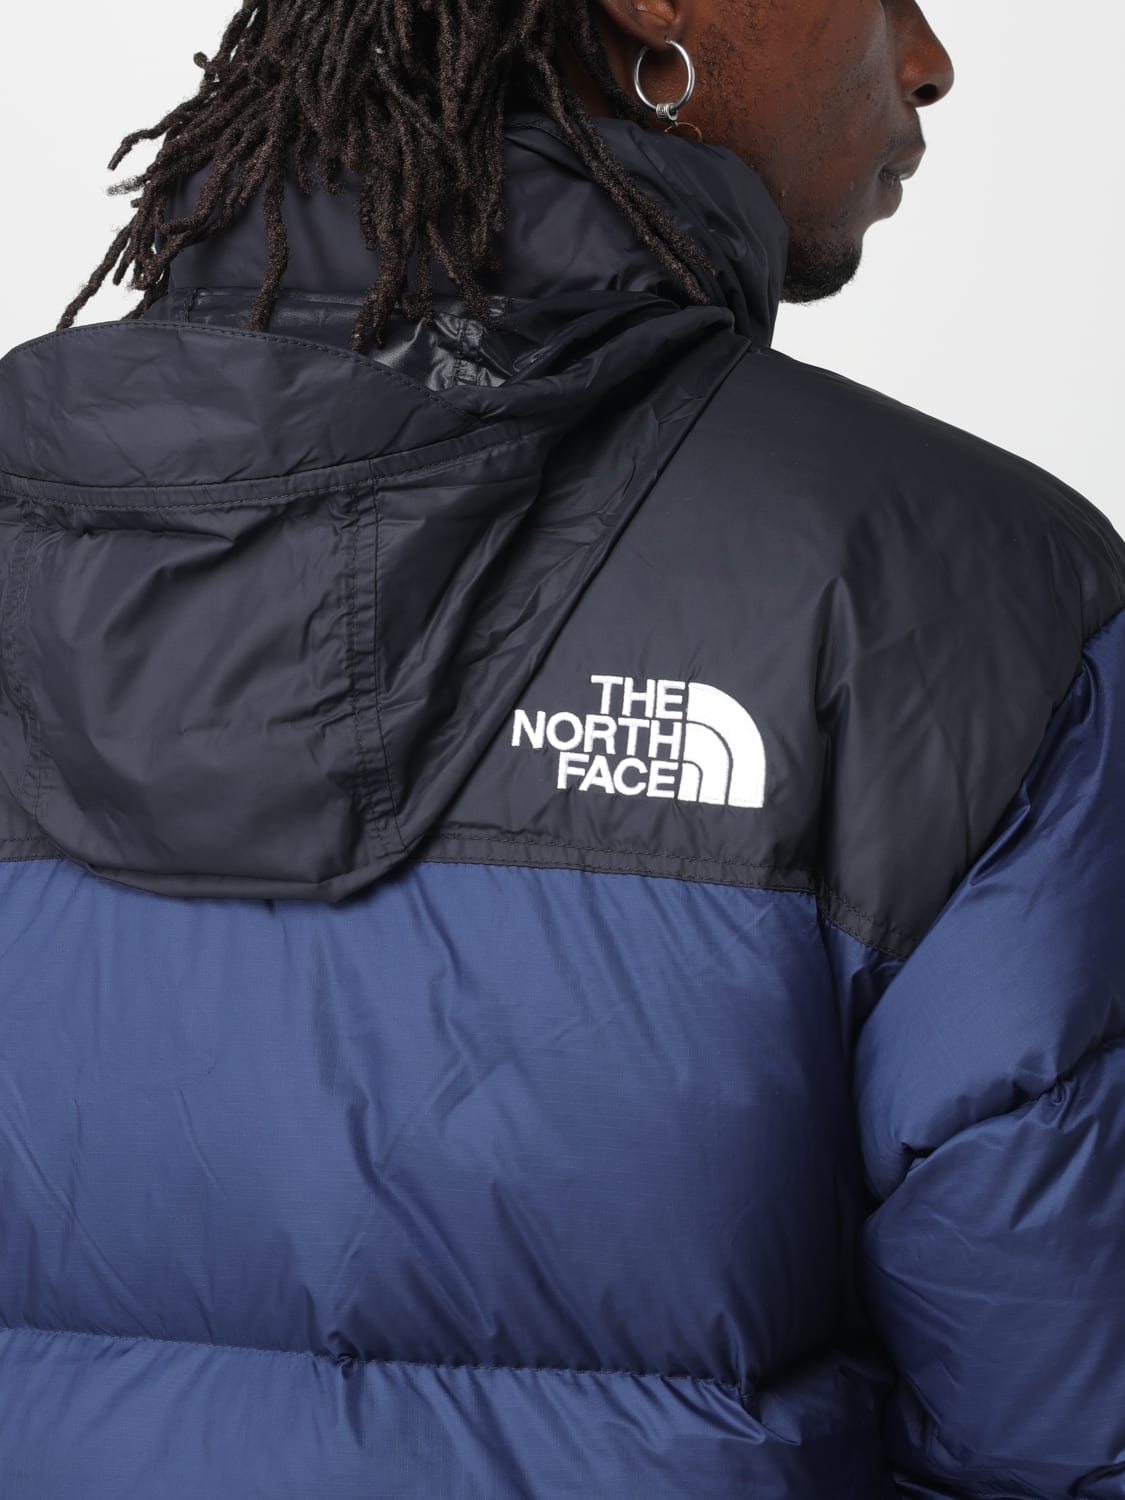 THE NORTH FACE: Veste homme - Bleu  Veste The North Face NF0A3C8D en ligne  sur